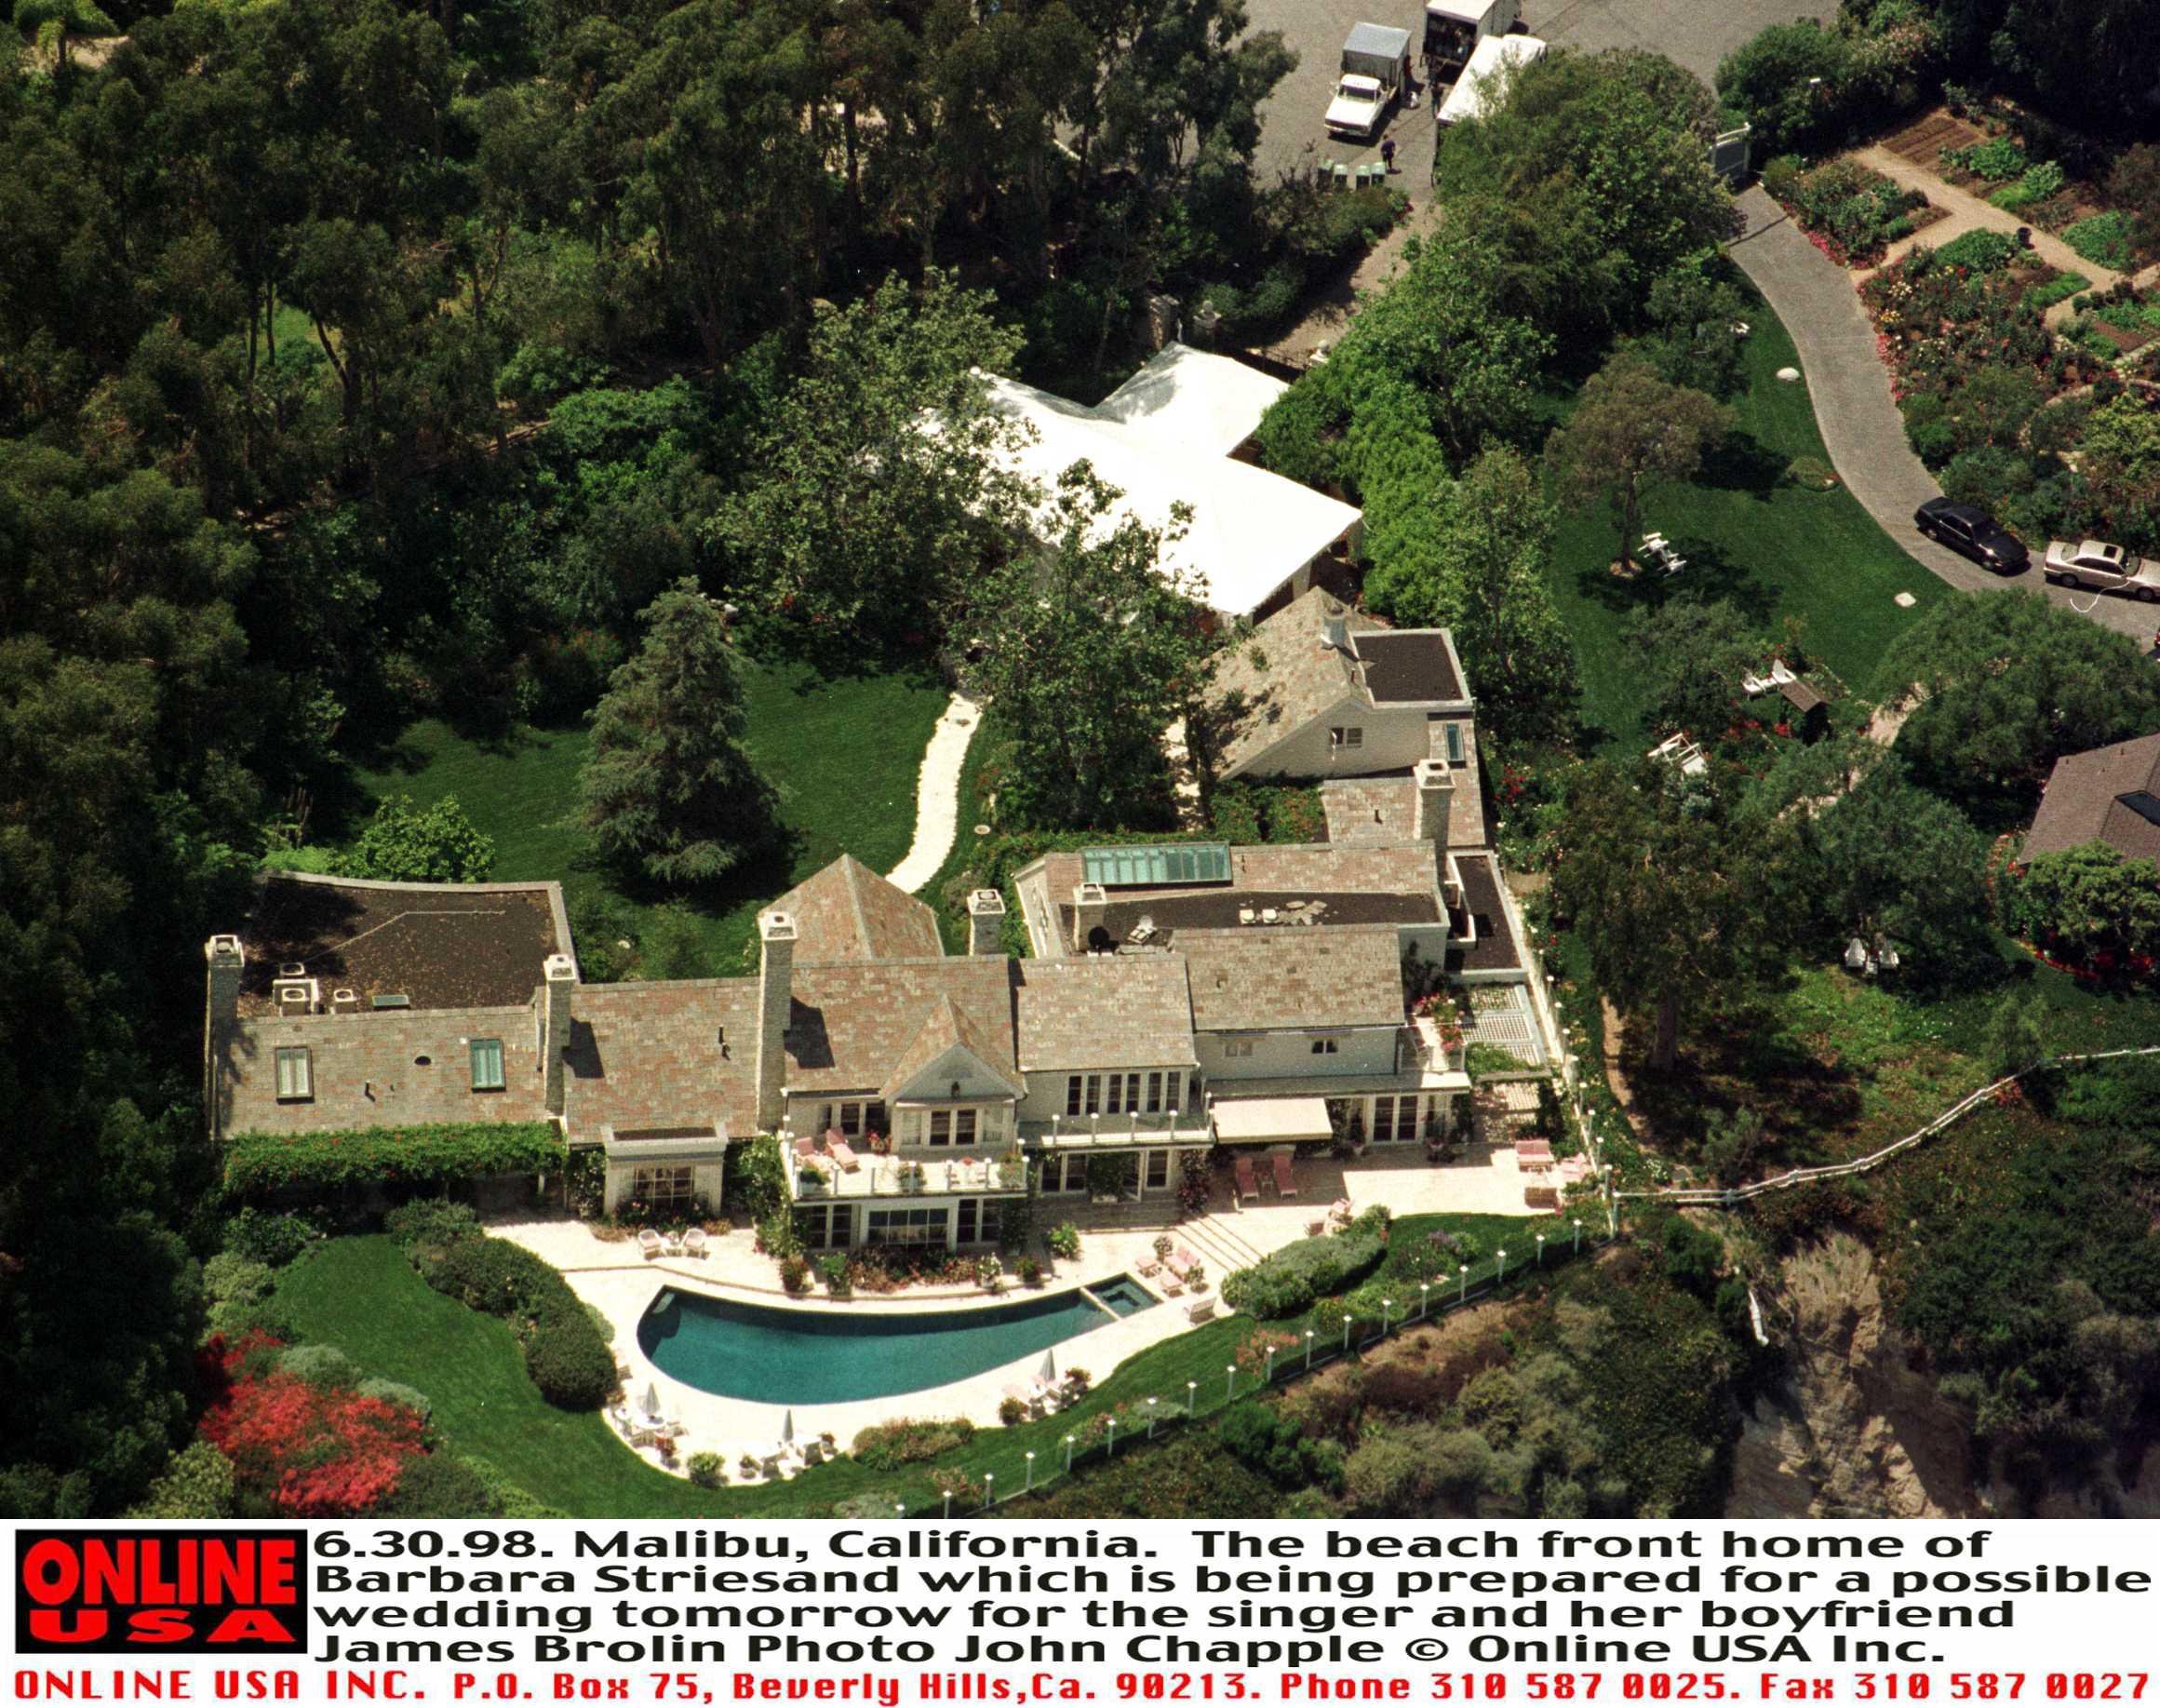 La casa de Barbra Streisand fotografiada en una toma aérea captada el 30 de junio de 1998 en Malibu, California. | Foto: Getty Images